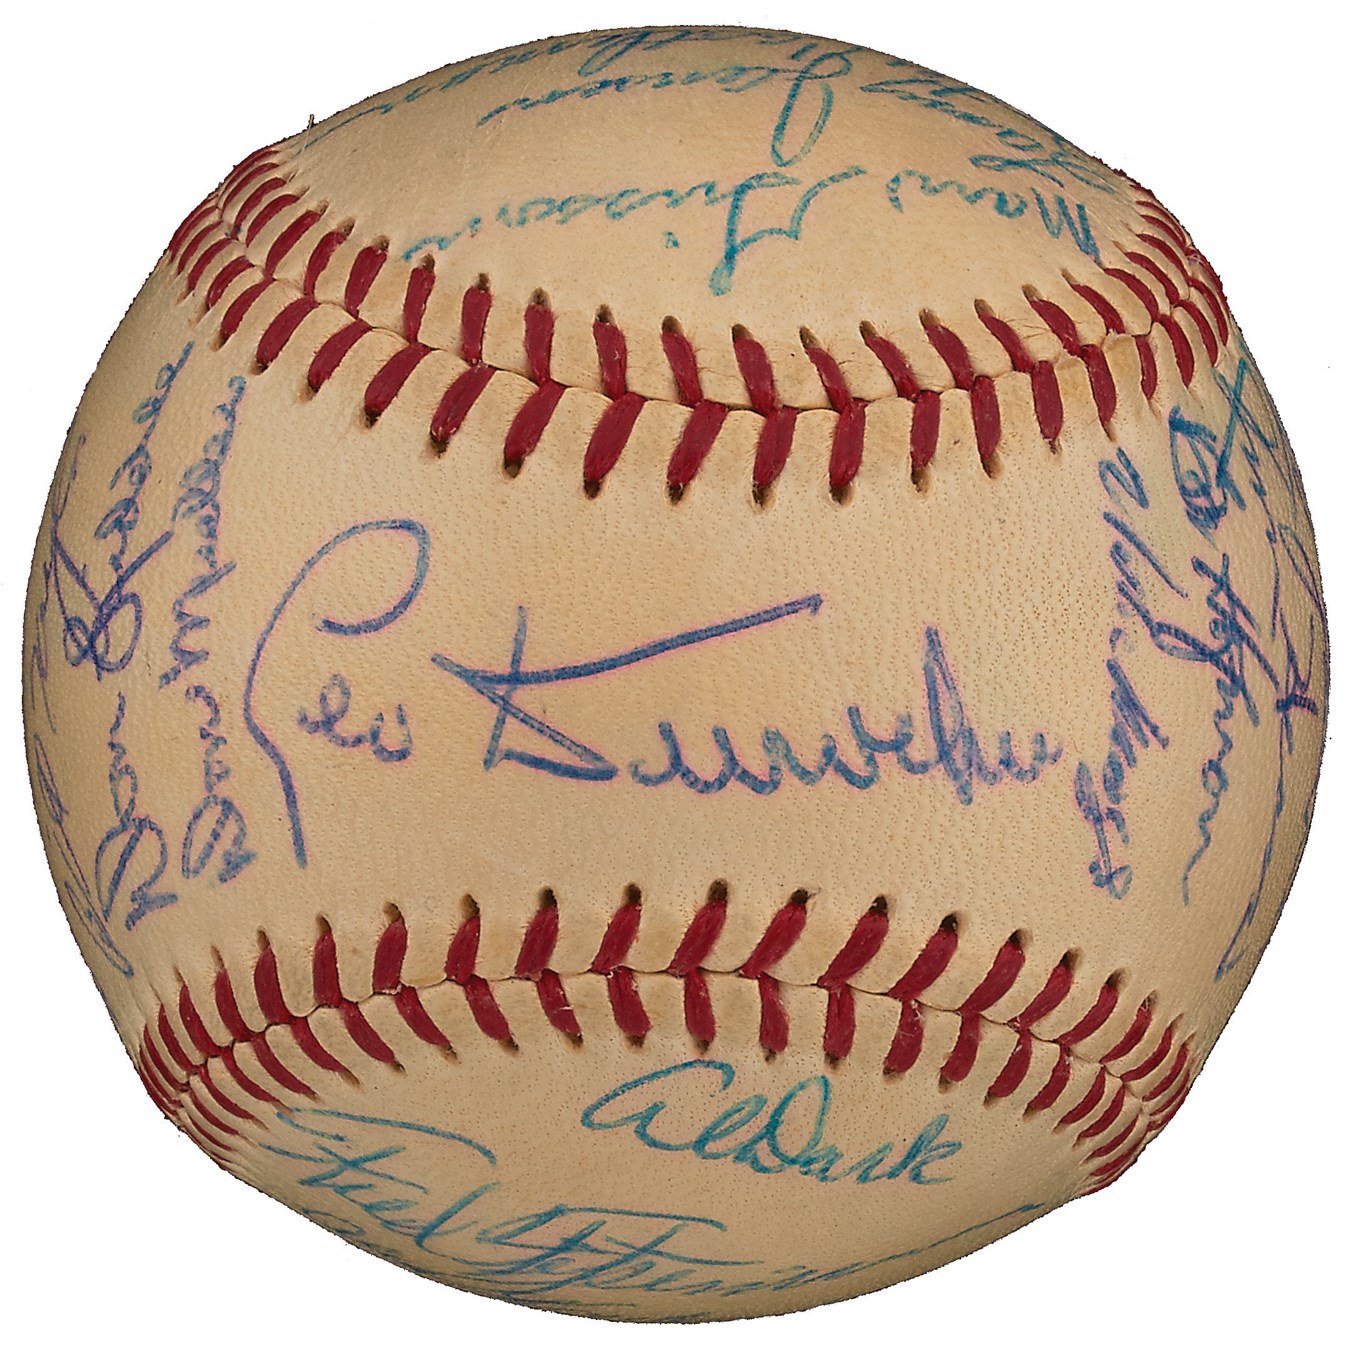 - 1954 World Champion New York Giants Team-Signed Baseball (PSA 8.5, Highest Graded)